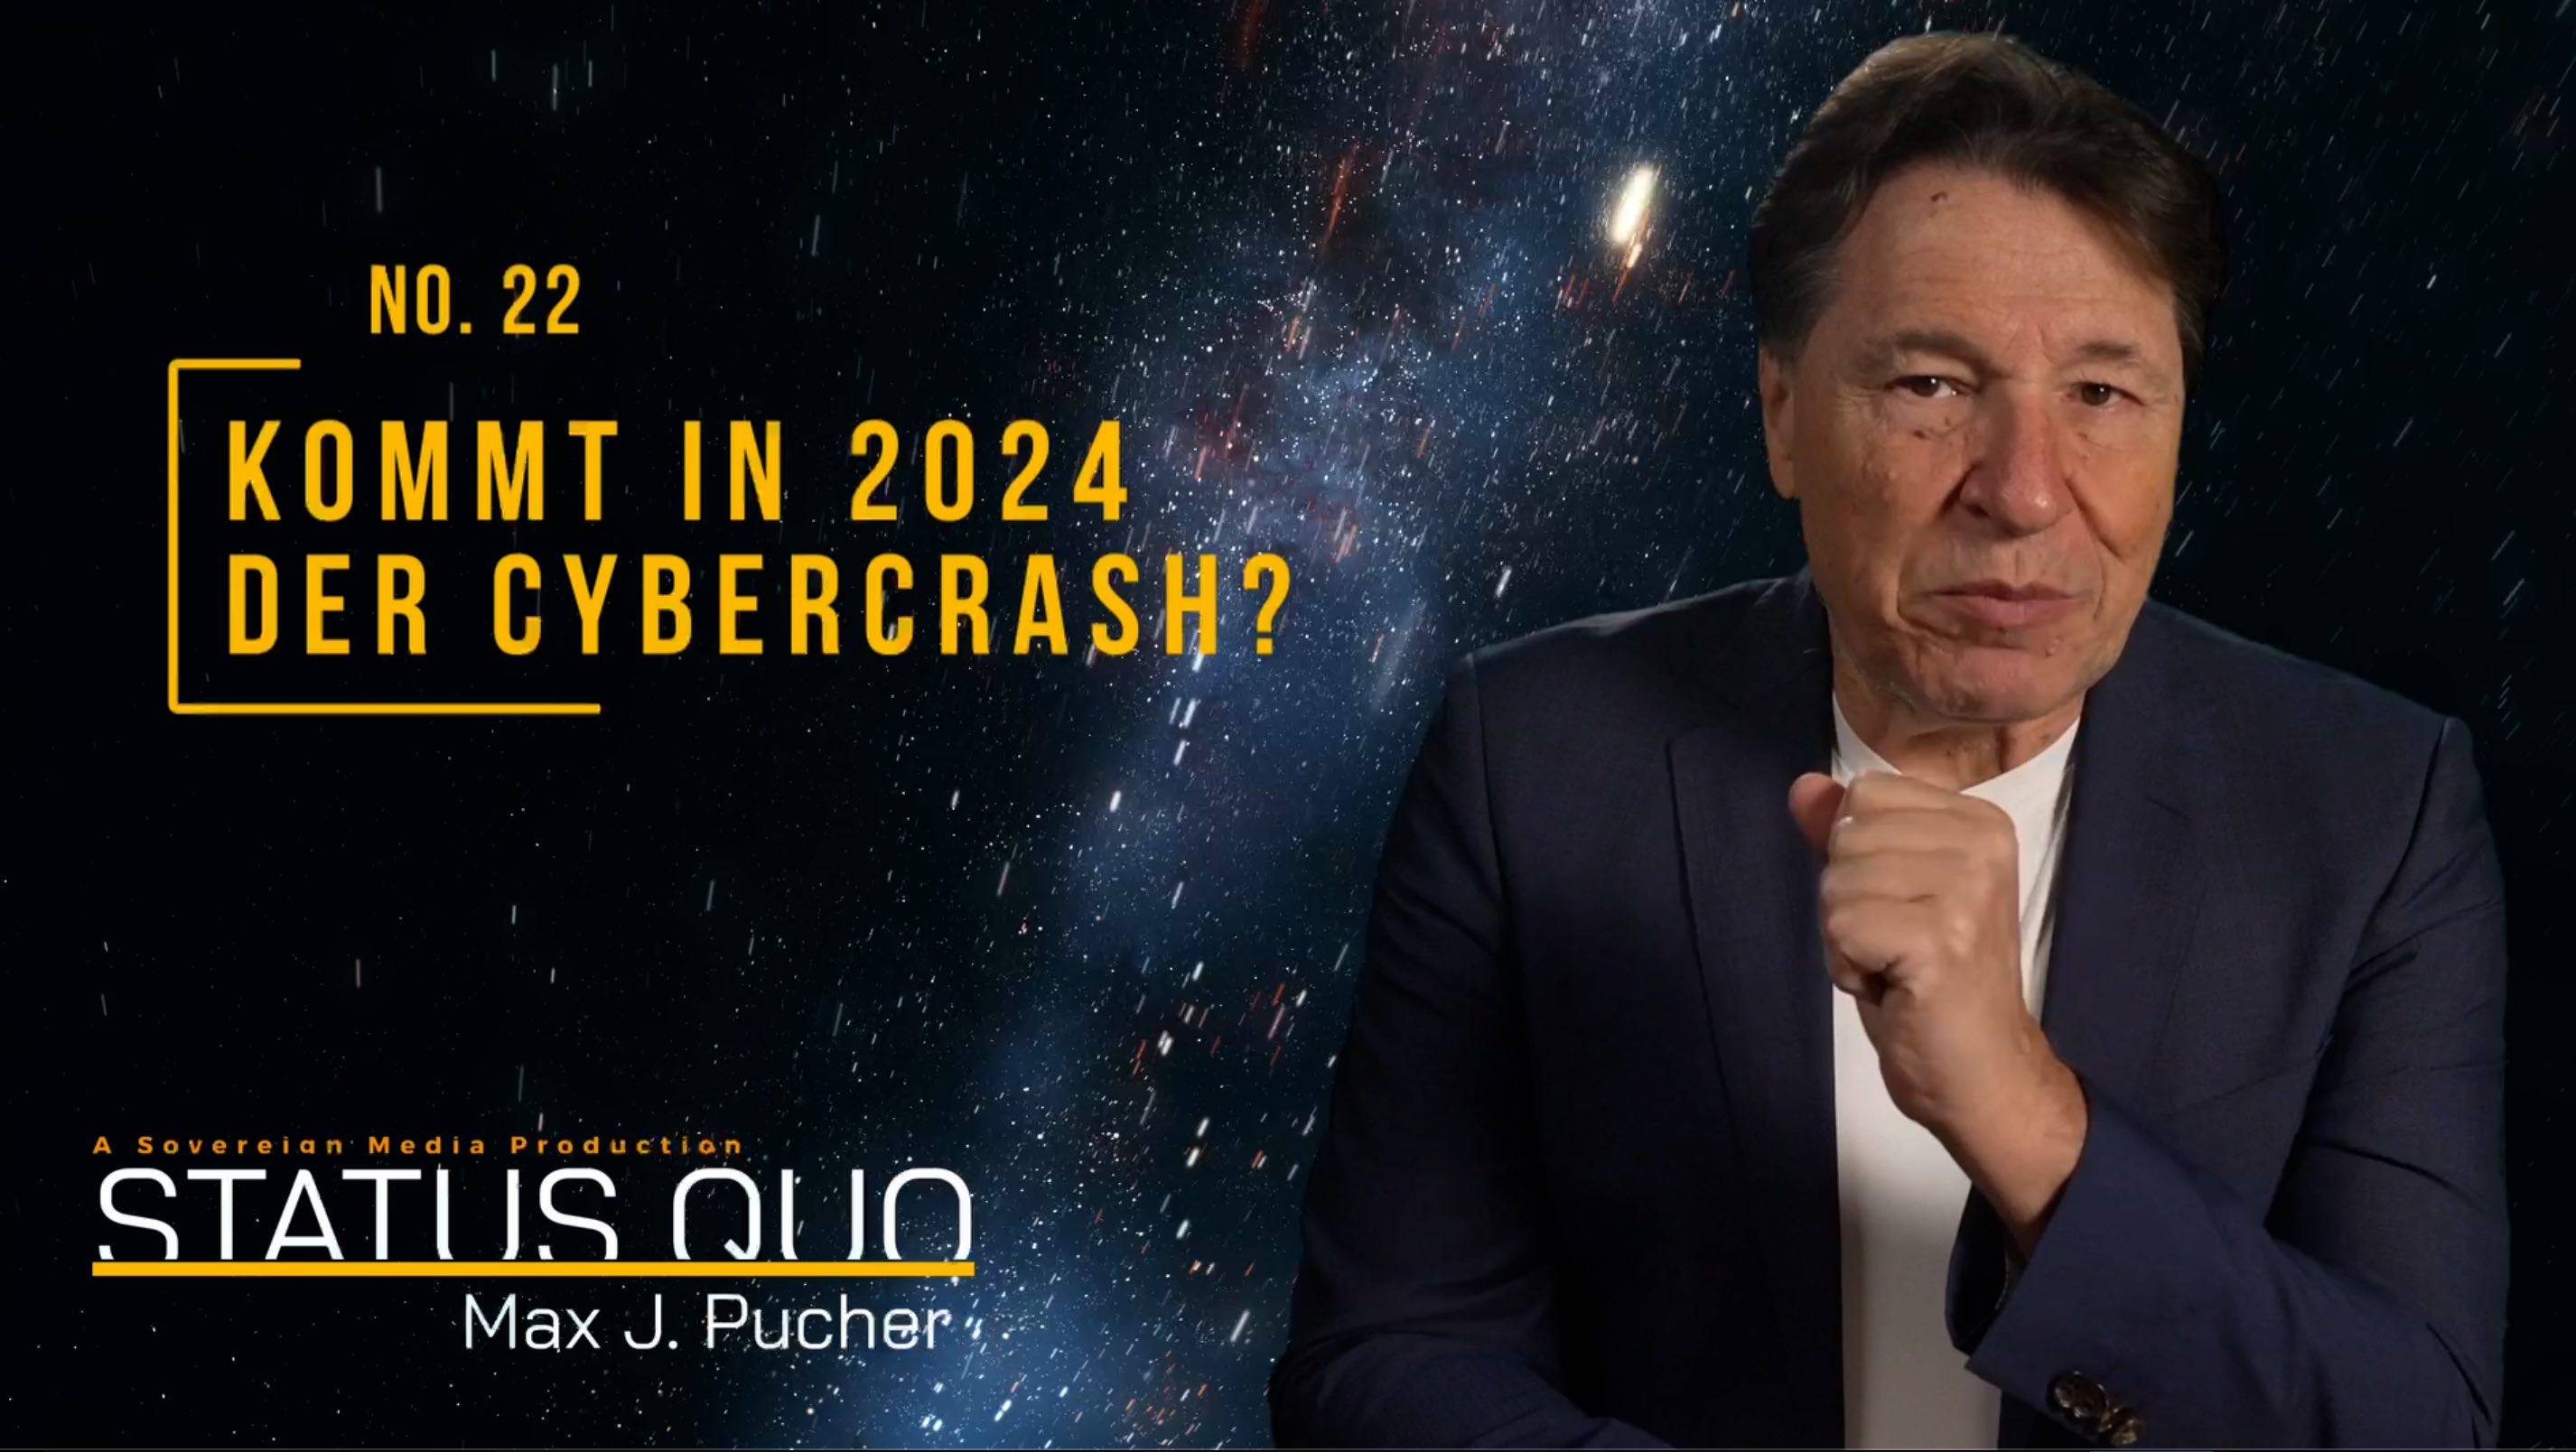 KOMMT IN 2024 DER CYBERCRASH?